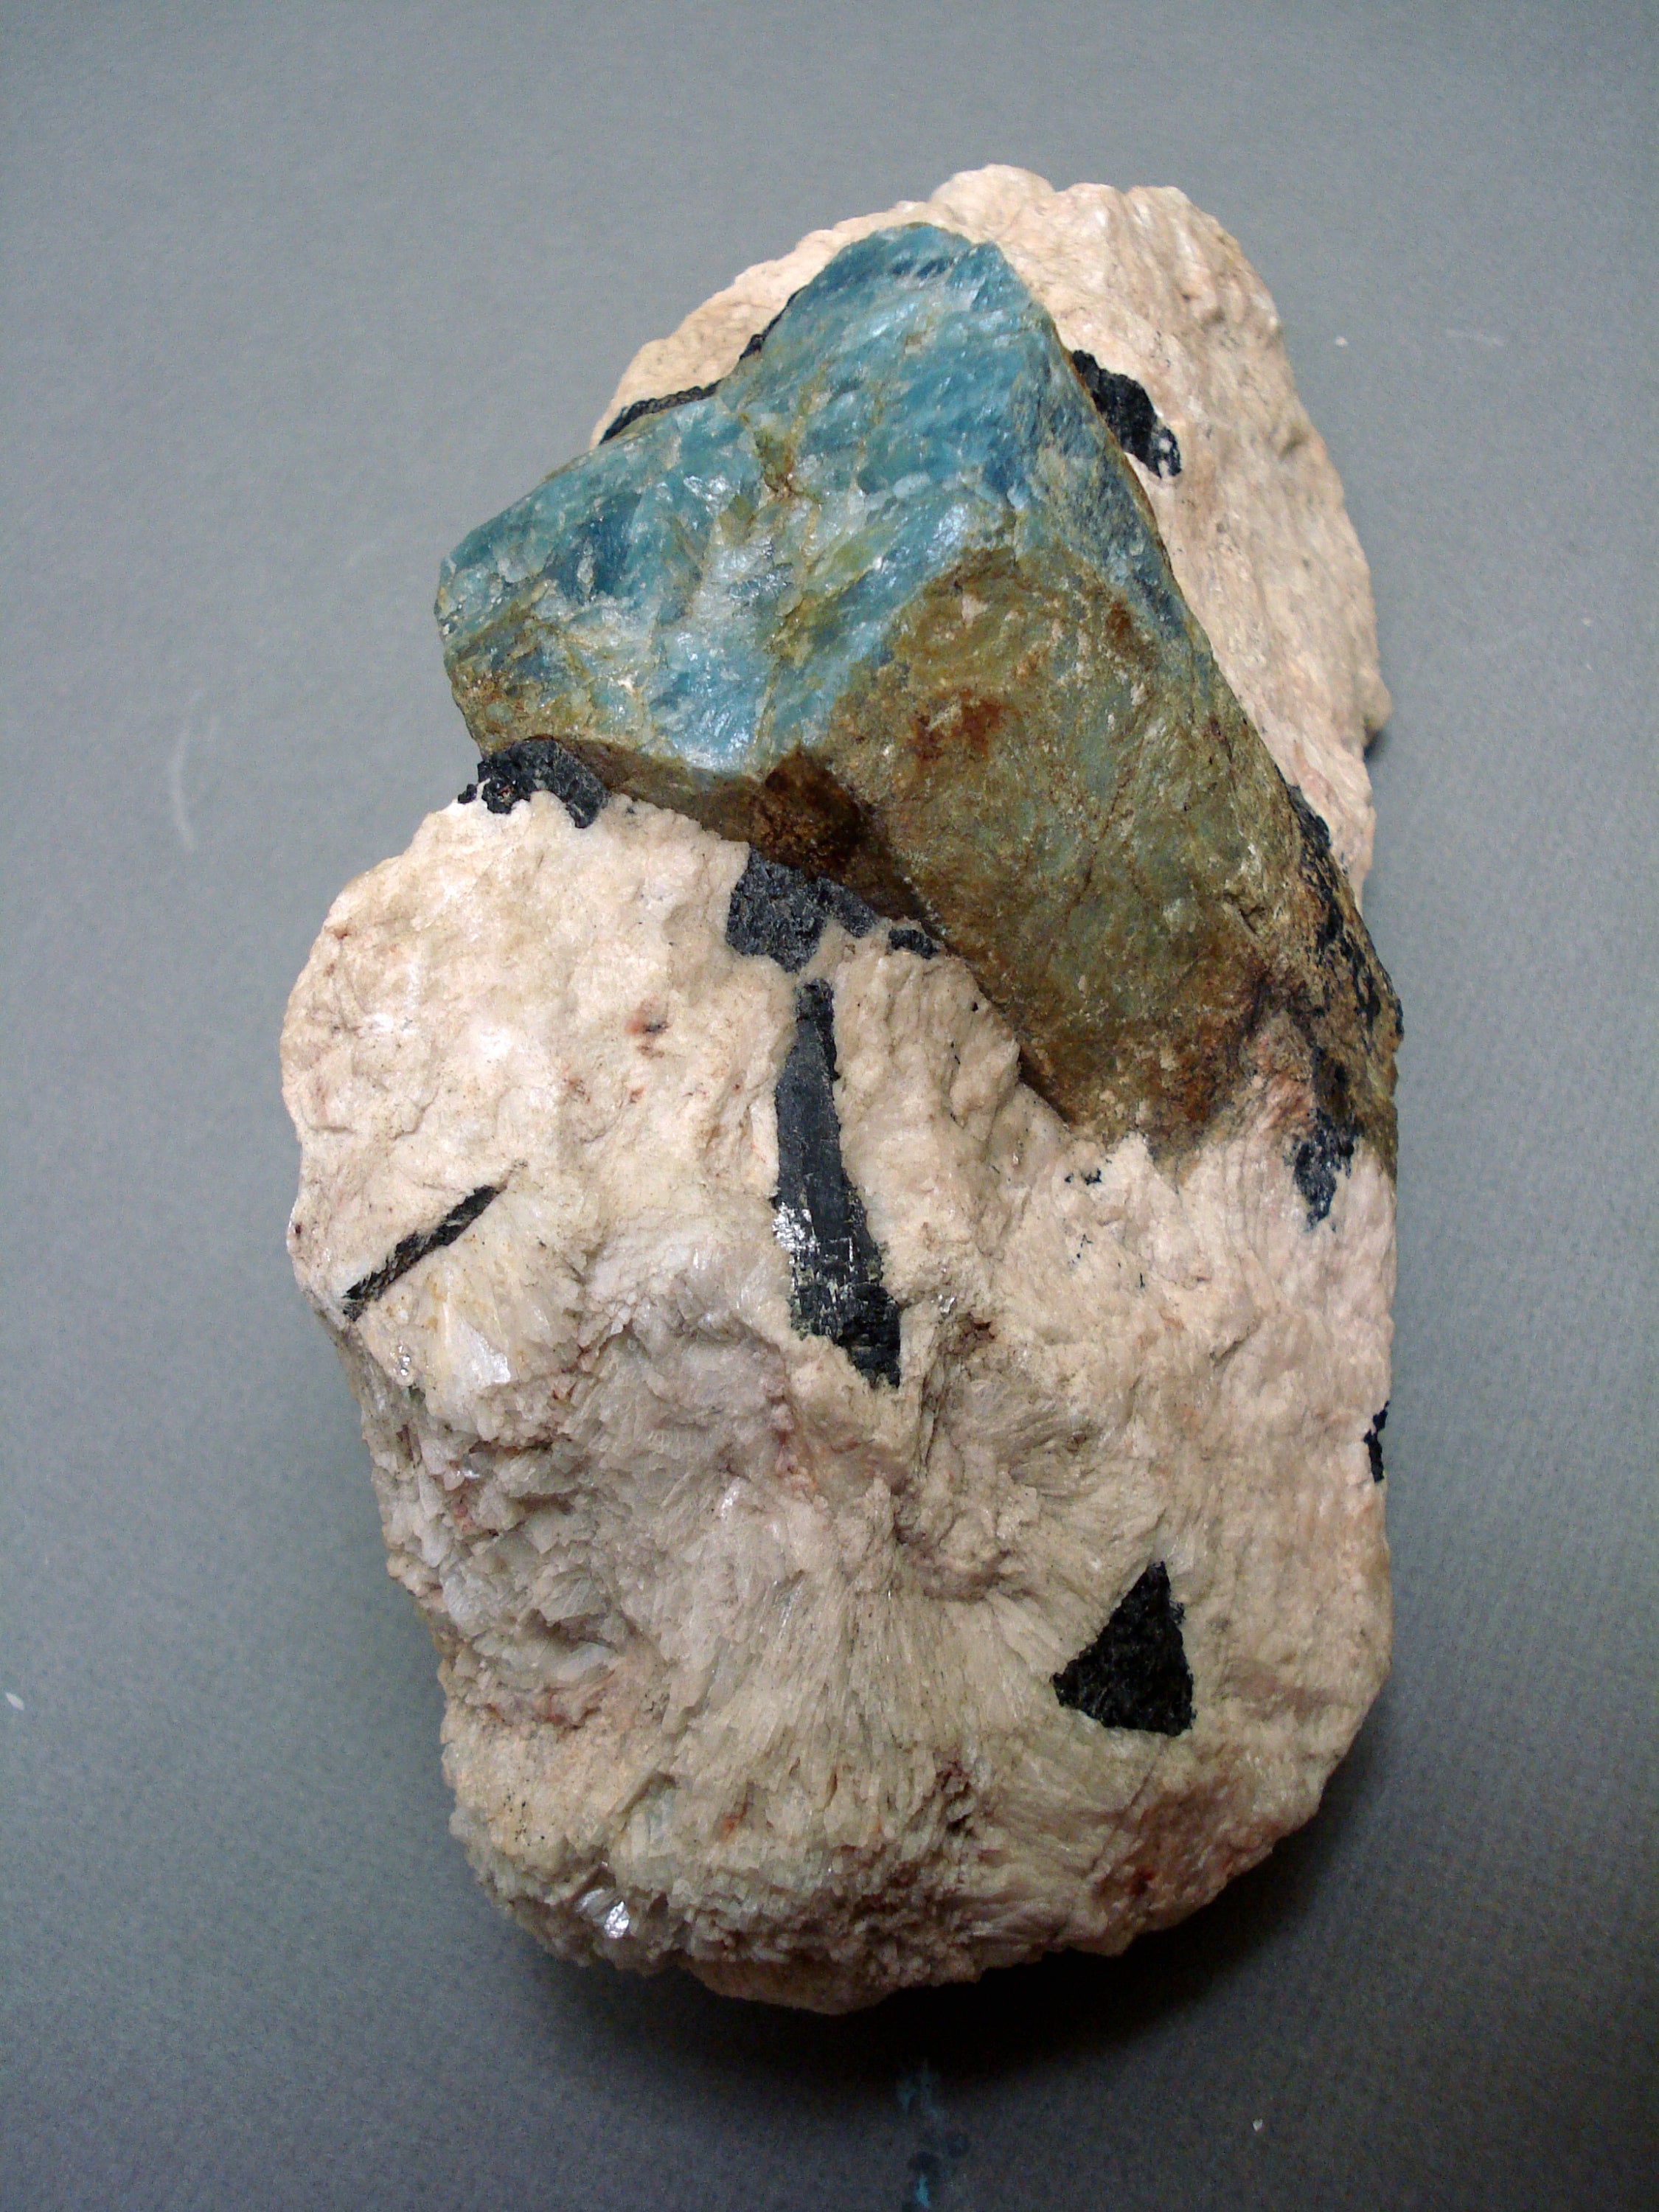 Beryl variety aquamarine with clevelandite and black schorl tourmaline